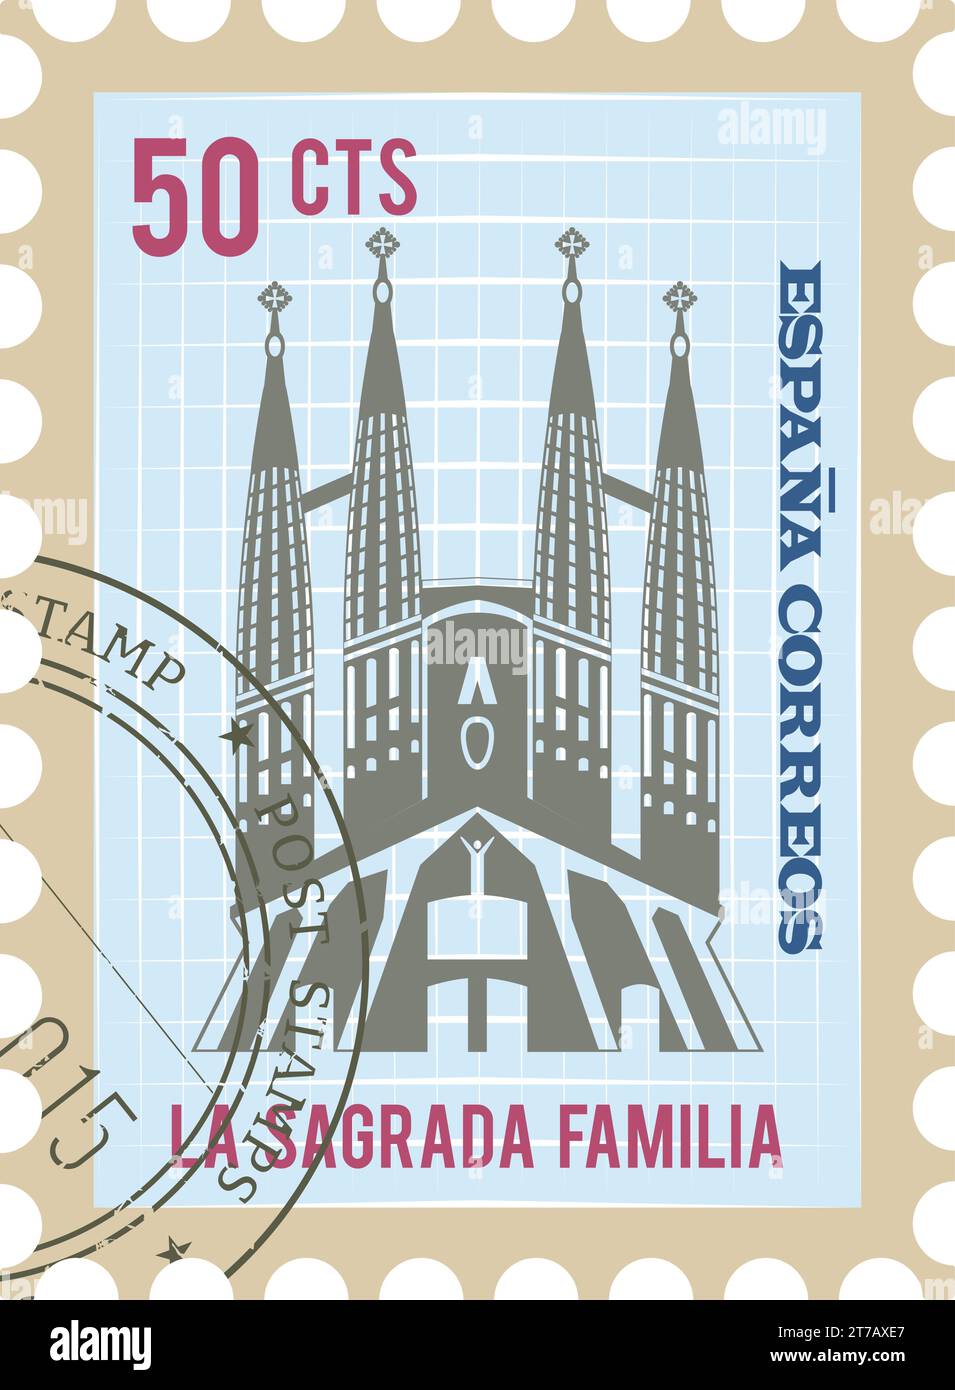 Timbre postal avec SAGRADA Família célèbre monument de BARCELONE, ESPAGNE Illustration de Vecteur